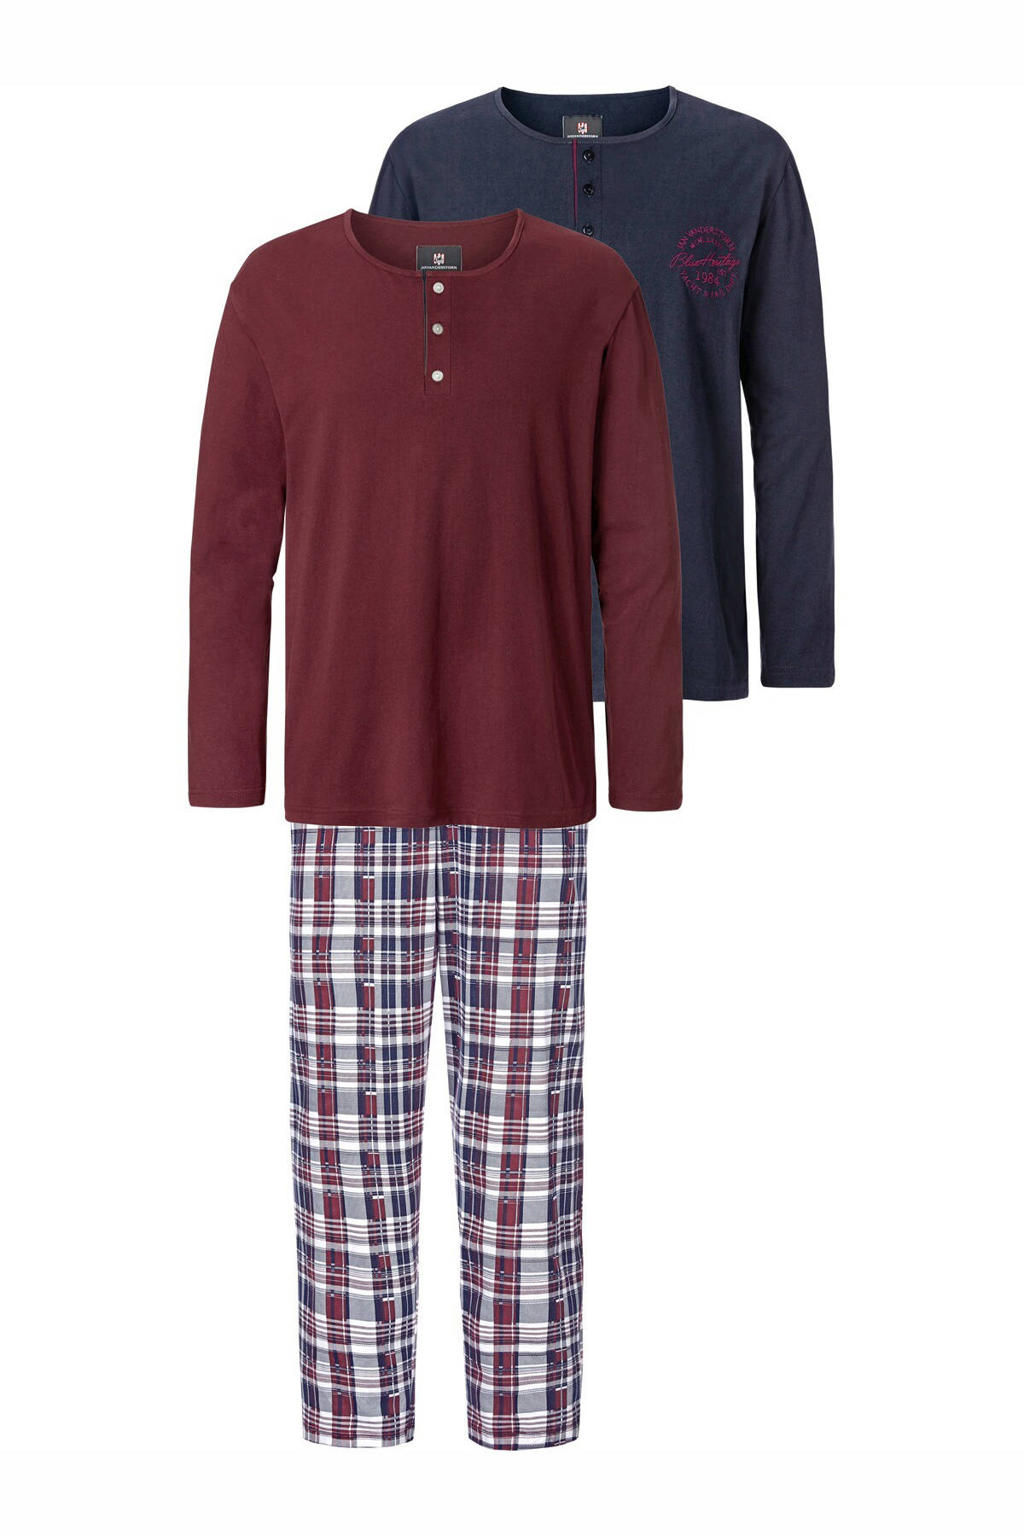 Jan Vanderstorm Plus Size 3-delige pyjama HELIMAR met ruit donkerblauw/bordeaux